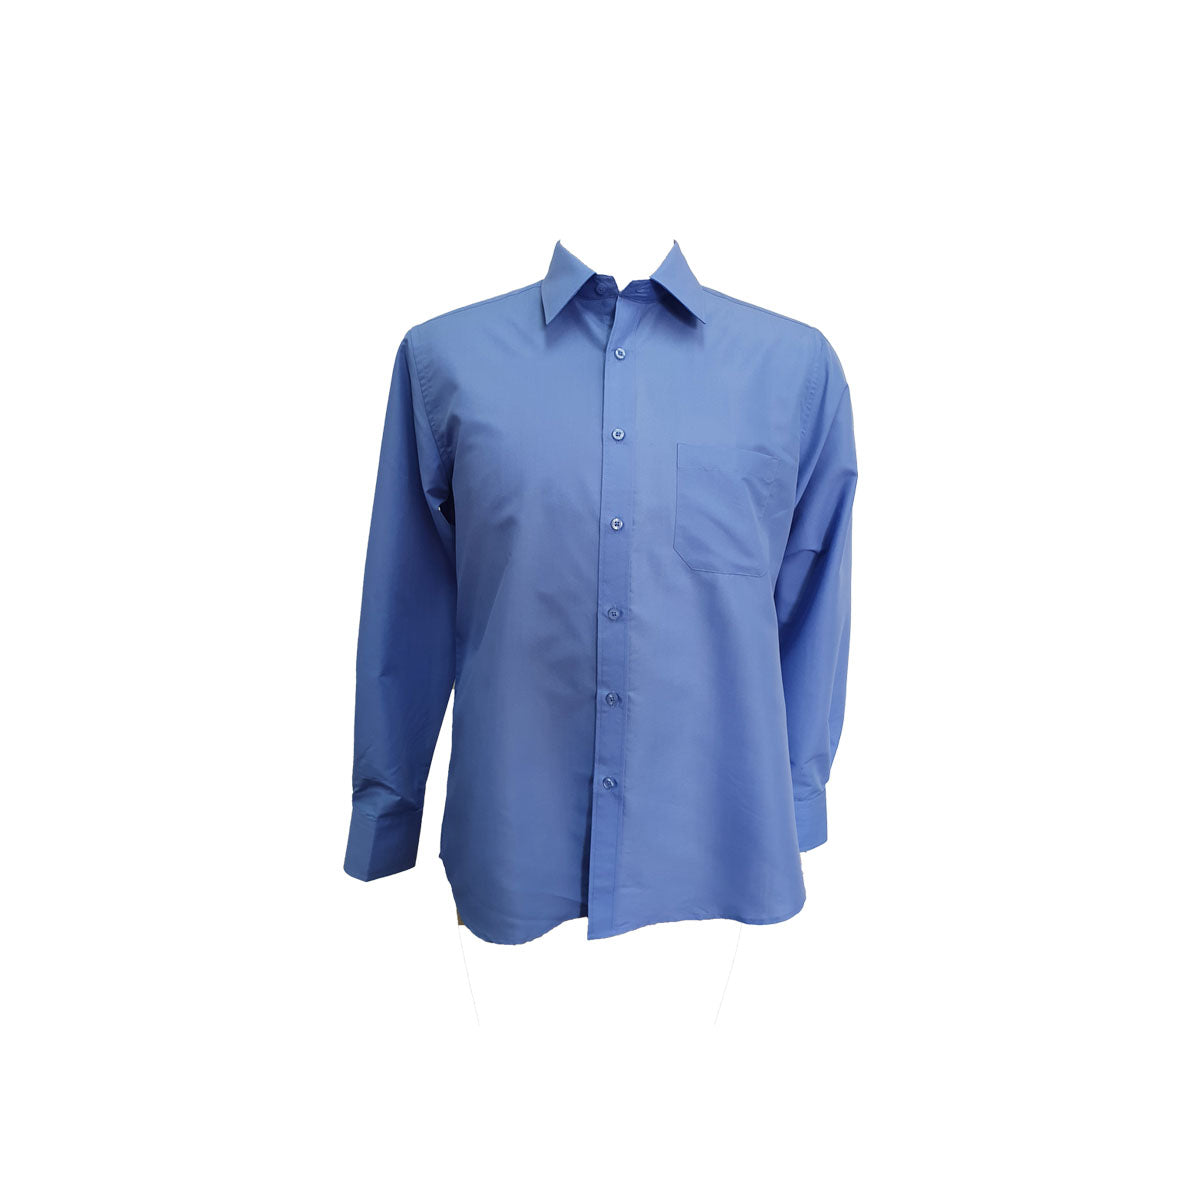 PELACO Business Shirt - P441200